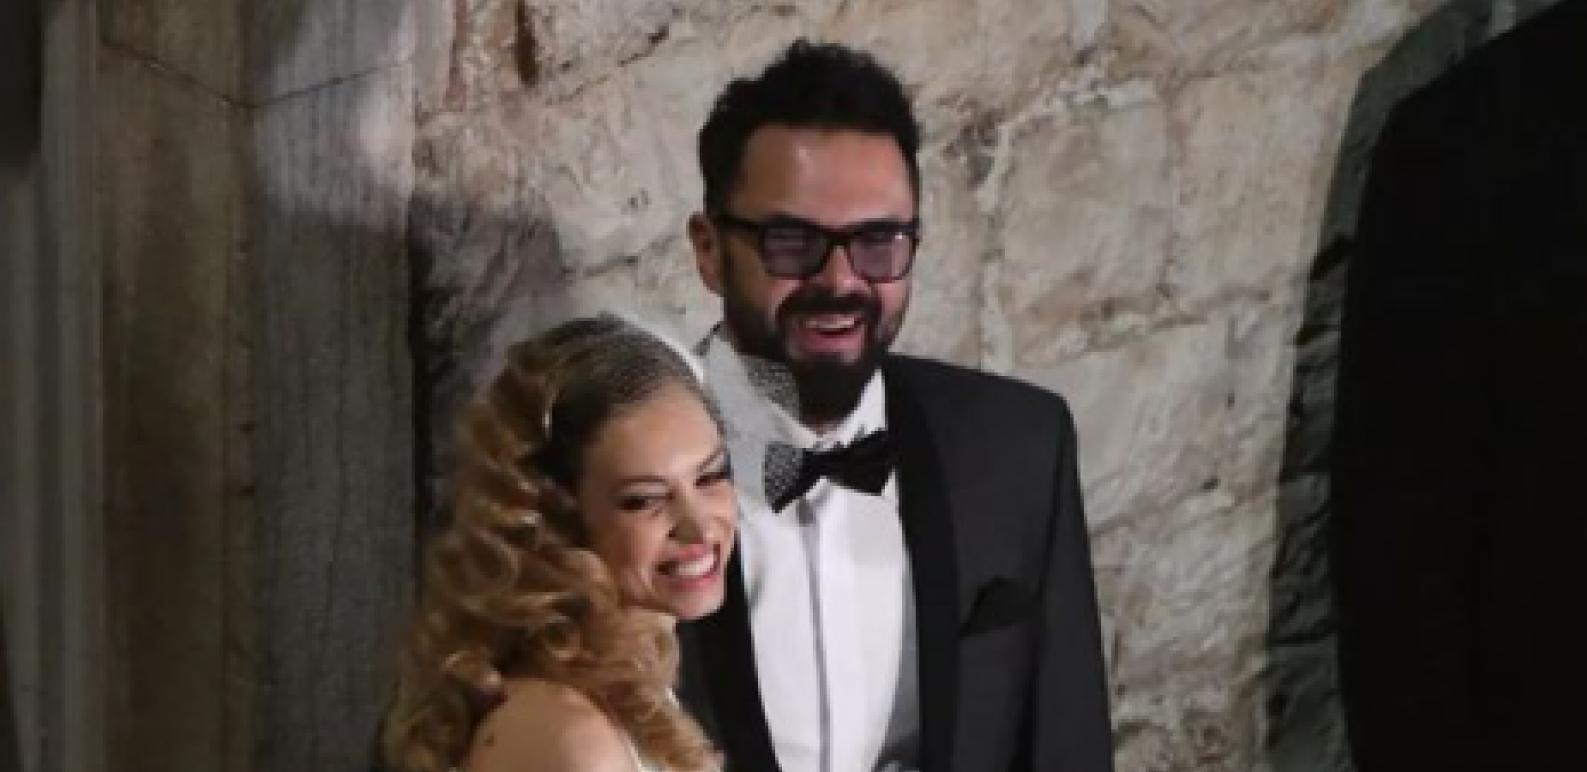 NISU USPELI BAŠ SVE DA SAKRIJU! Procurile dosad neviđene fotografije Hane Huljić sa glamuroznog venčanja! (FOTO)